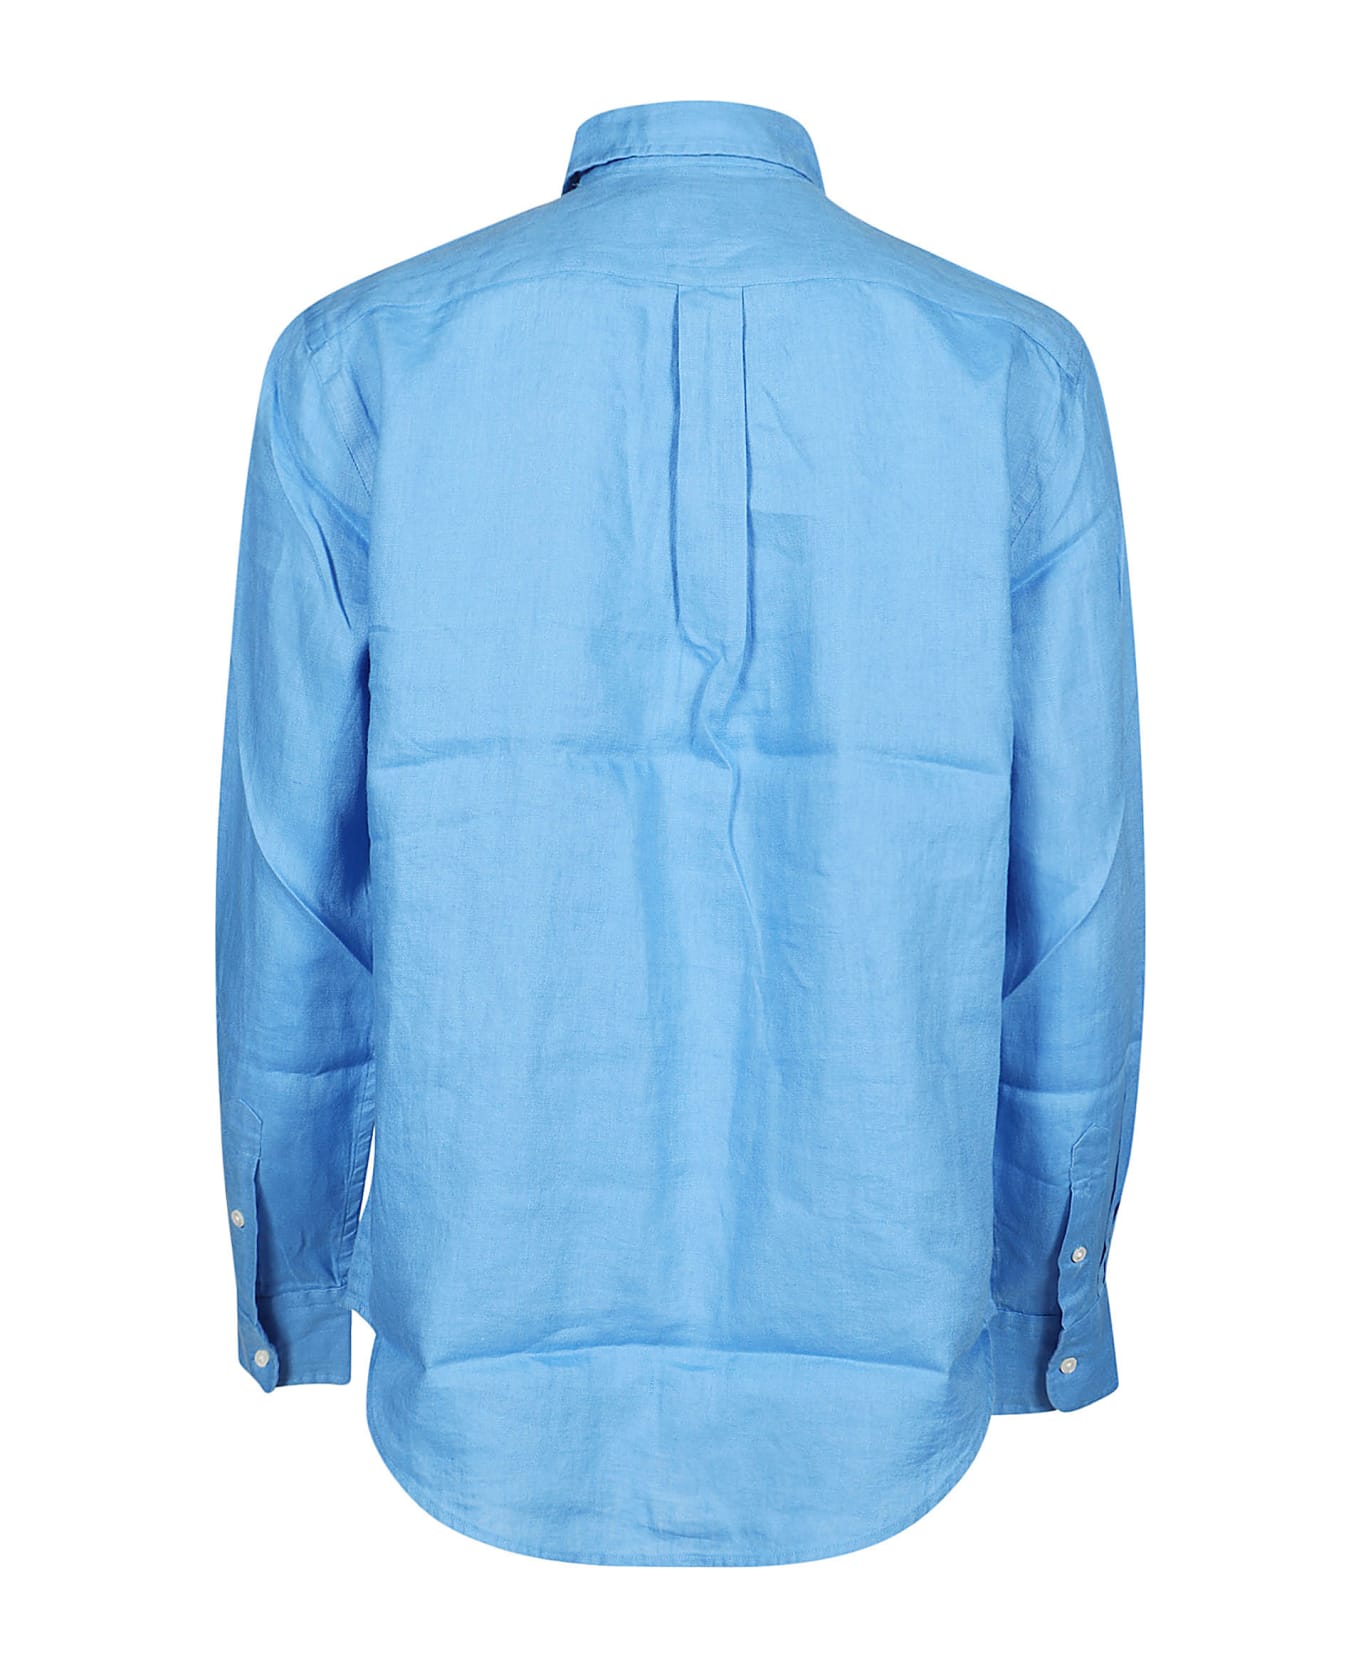 Polo Ralph Lauren Long Sleeve Button Front Shirt - Riviera Blue